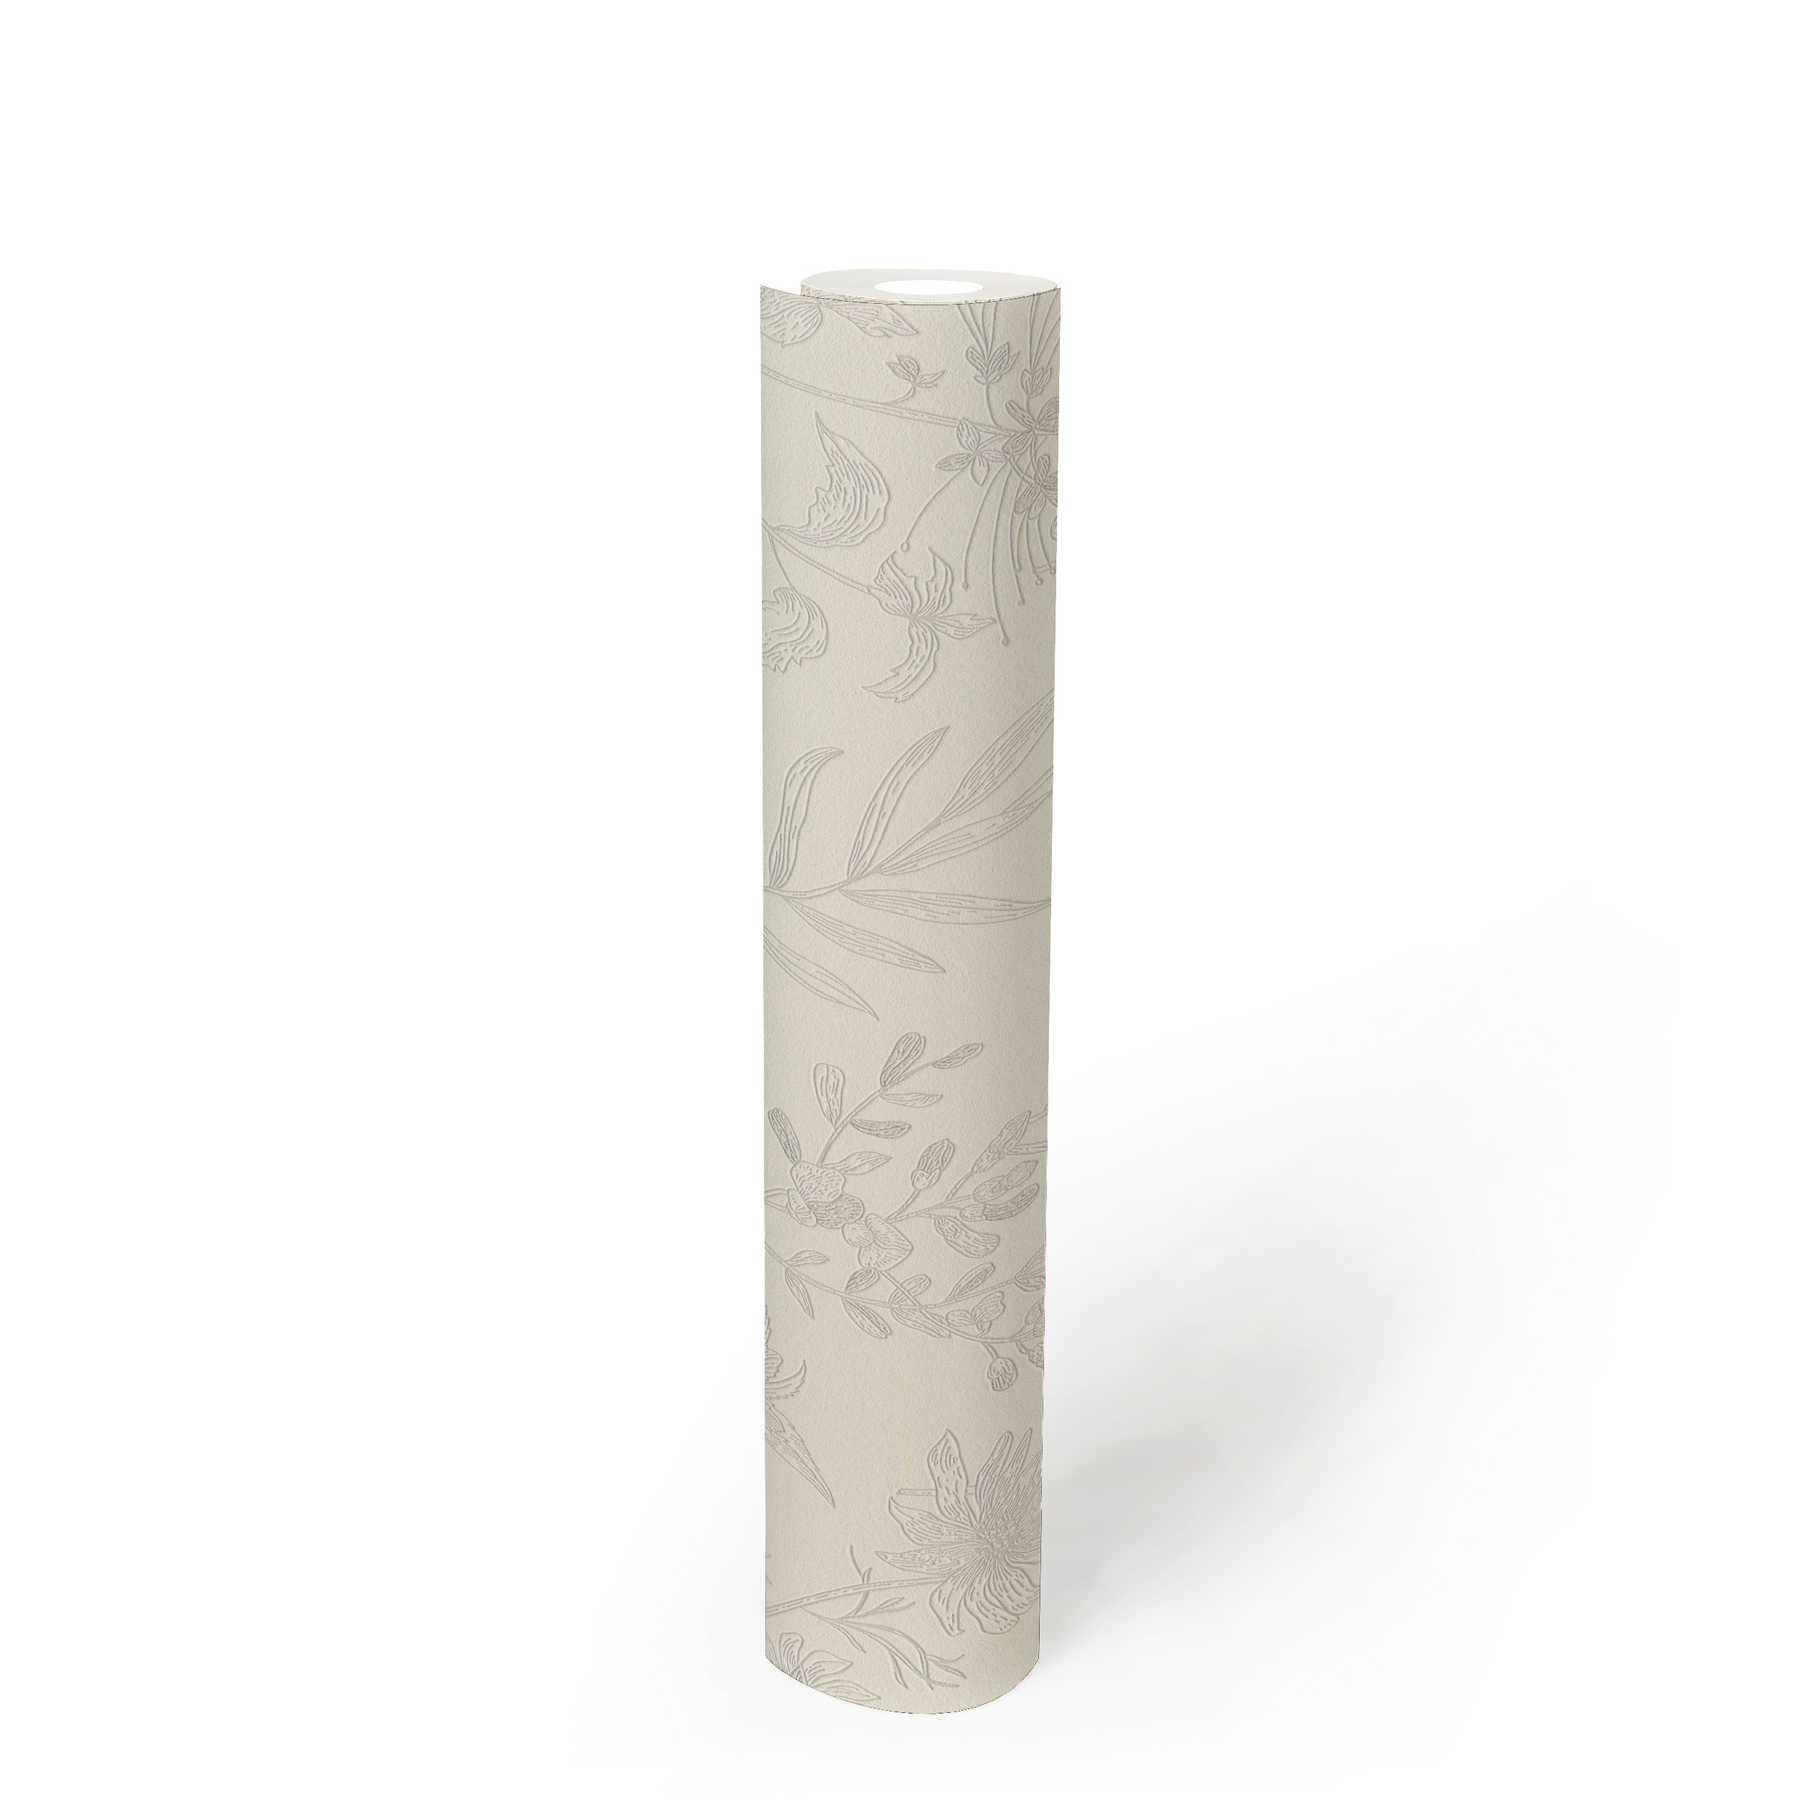             Papier peint intissé avec motif floral et accent métallique - beige, argent, blanc
        